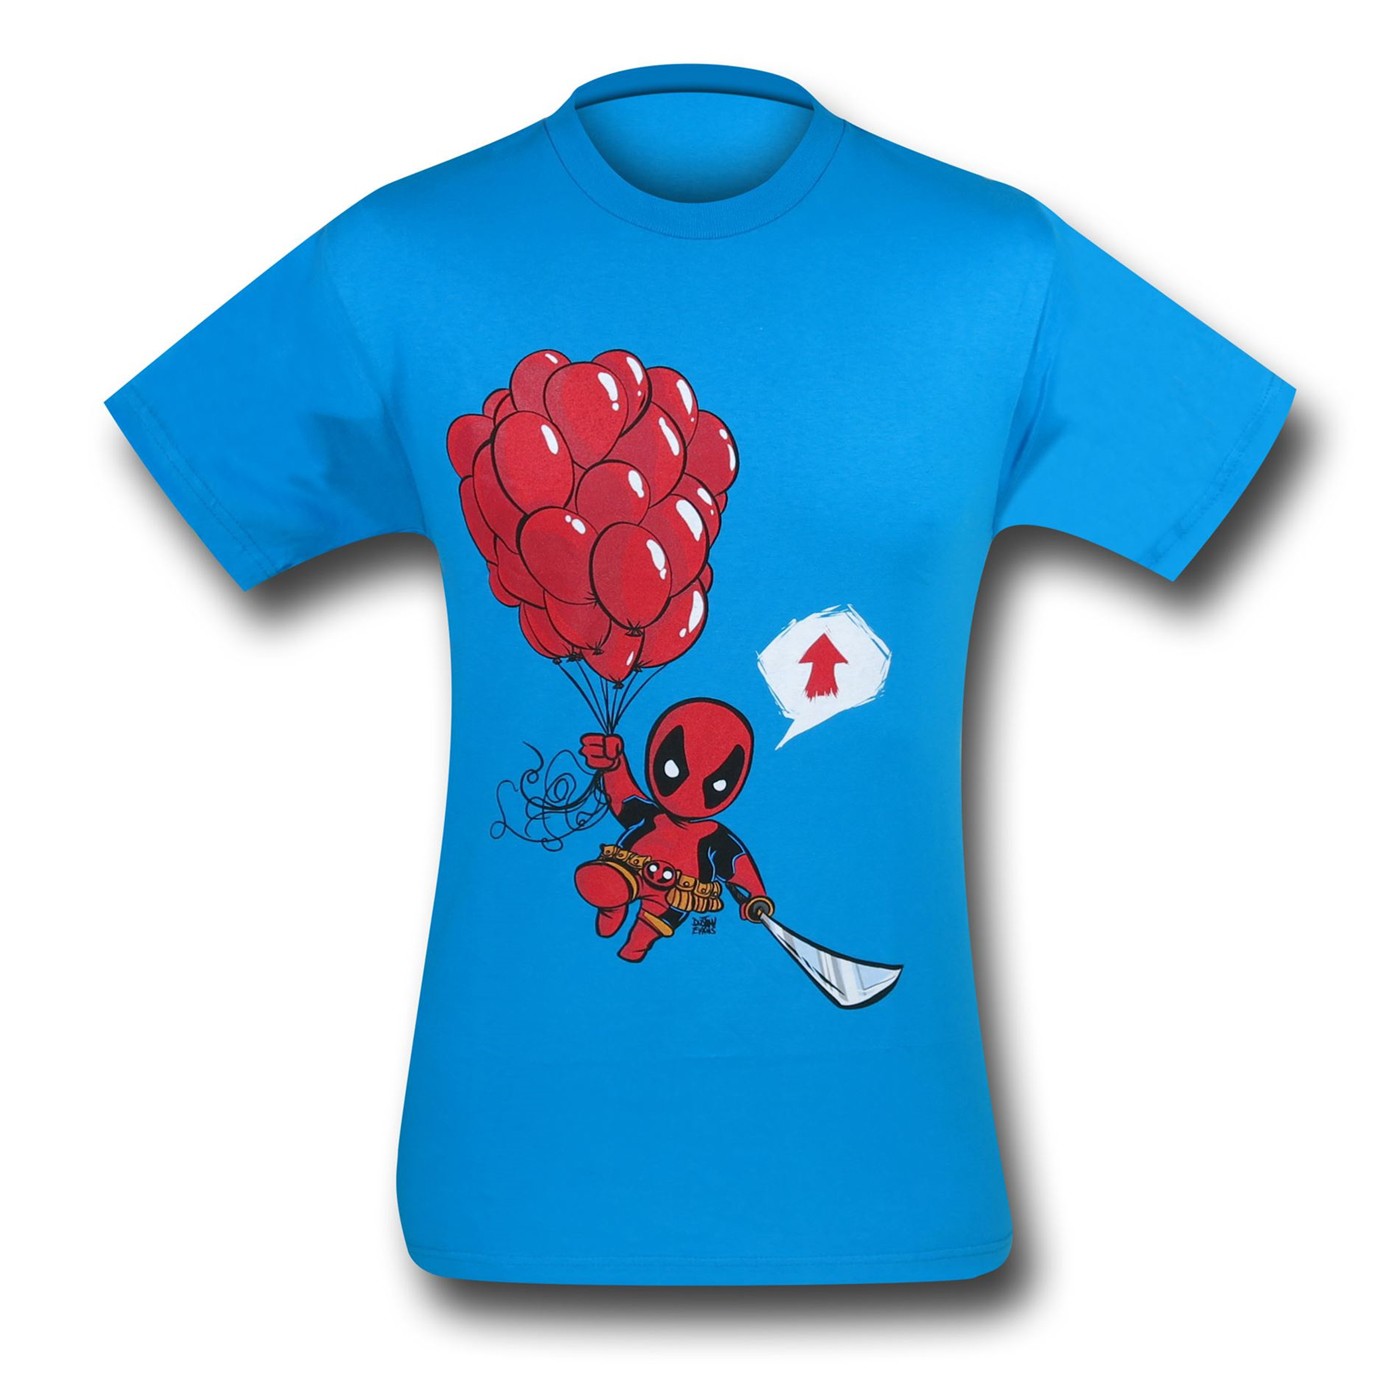 Deadpool Kidpool Going Up T-Shirt